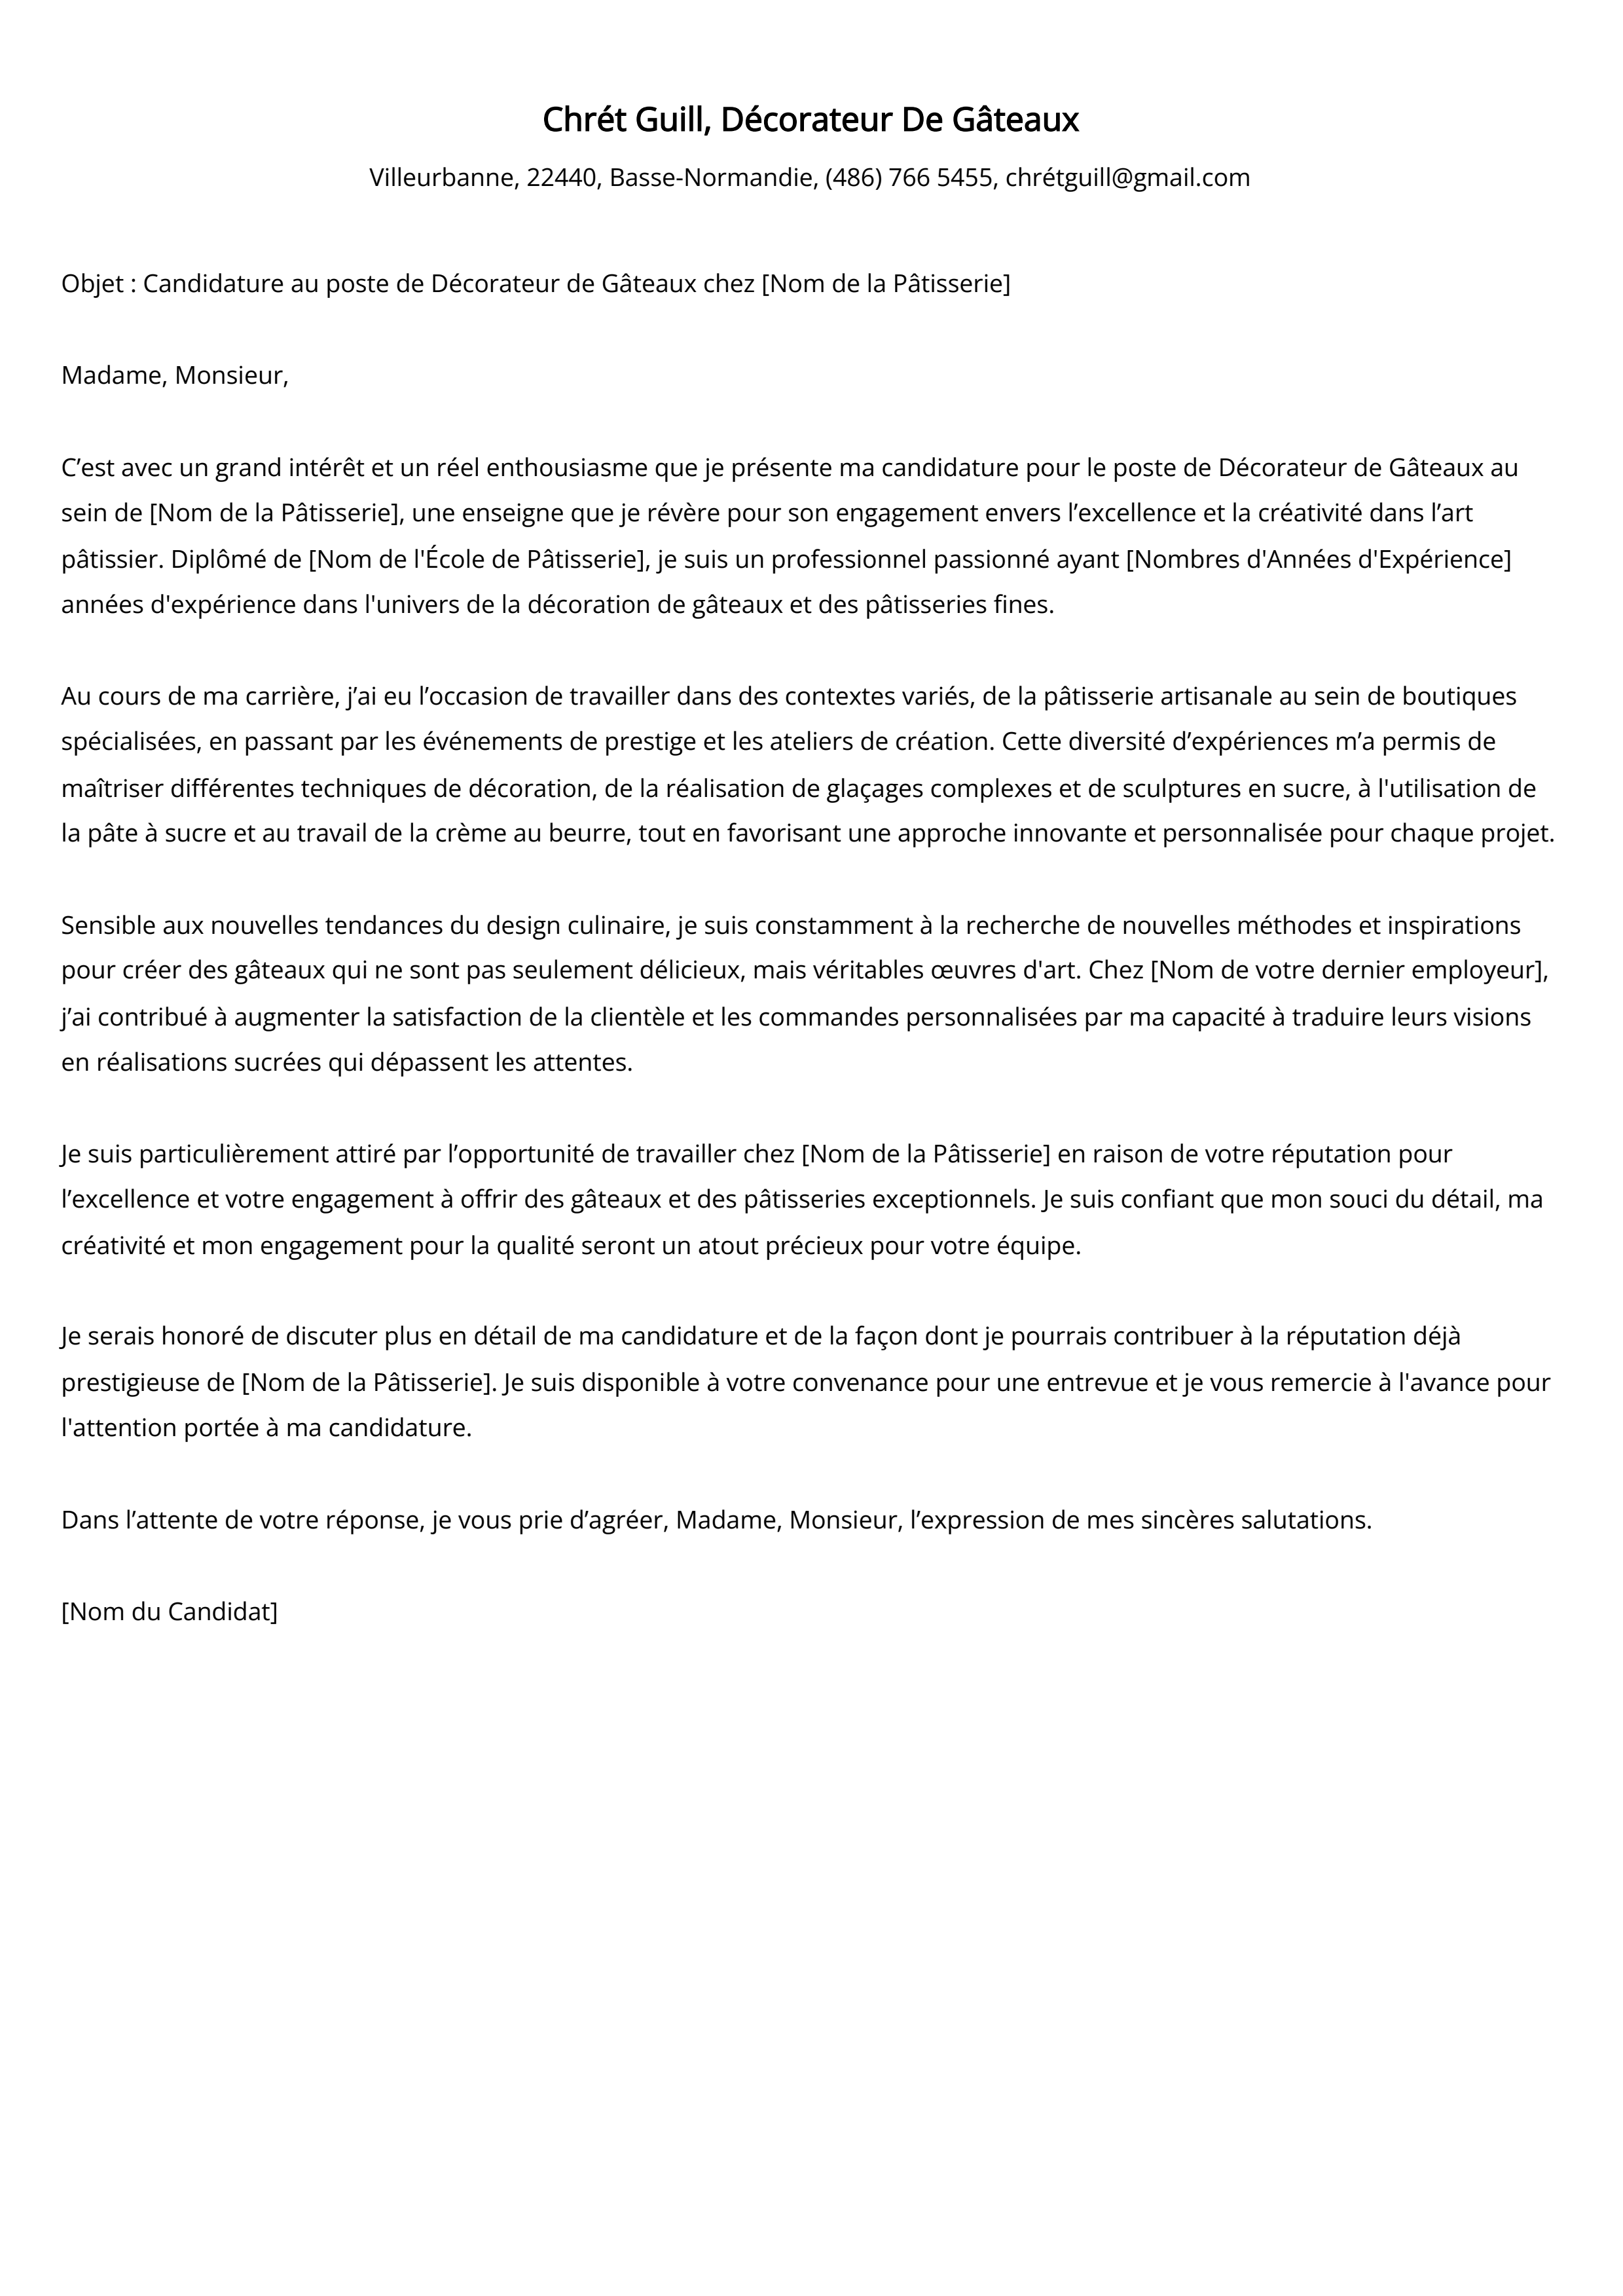 Décorateur De Gâteaux Cover Letter Example